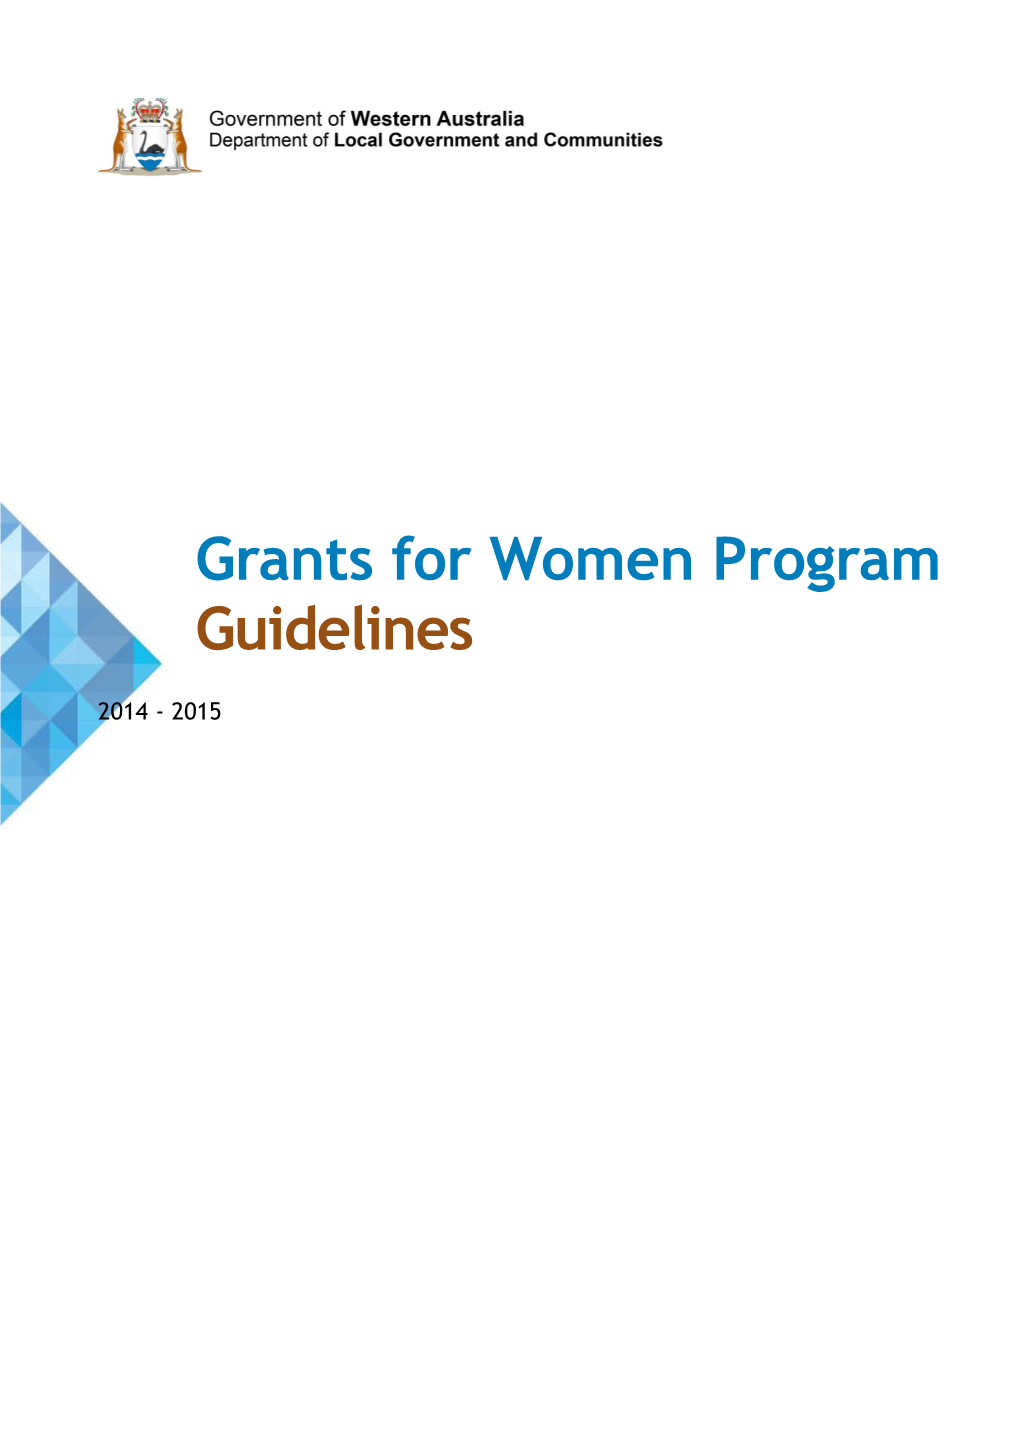 Grants for Women Program Guidelines 2014-15